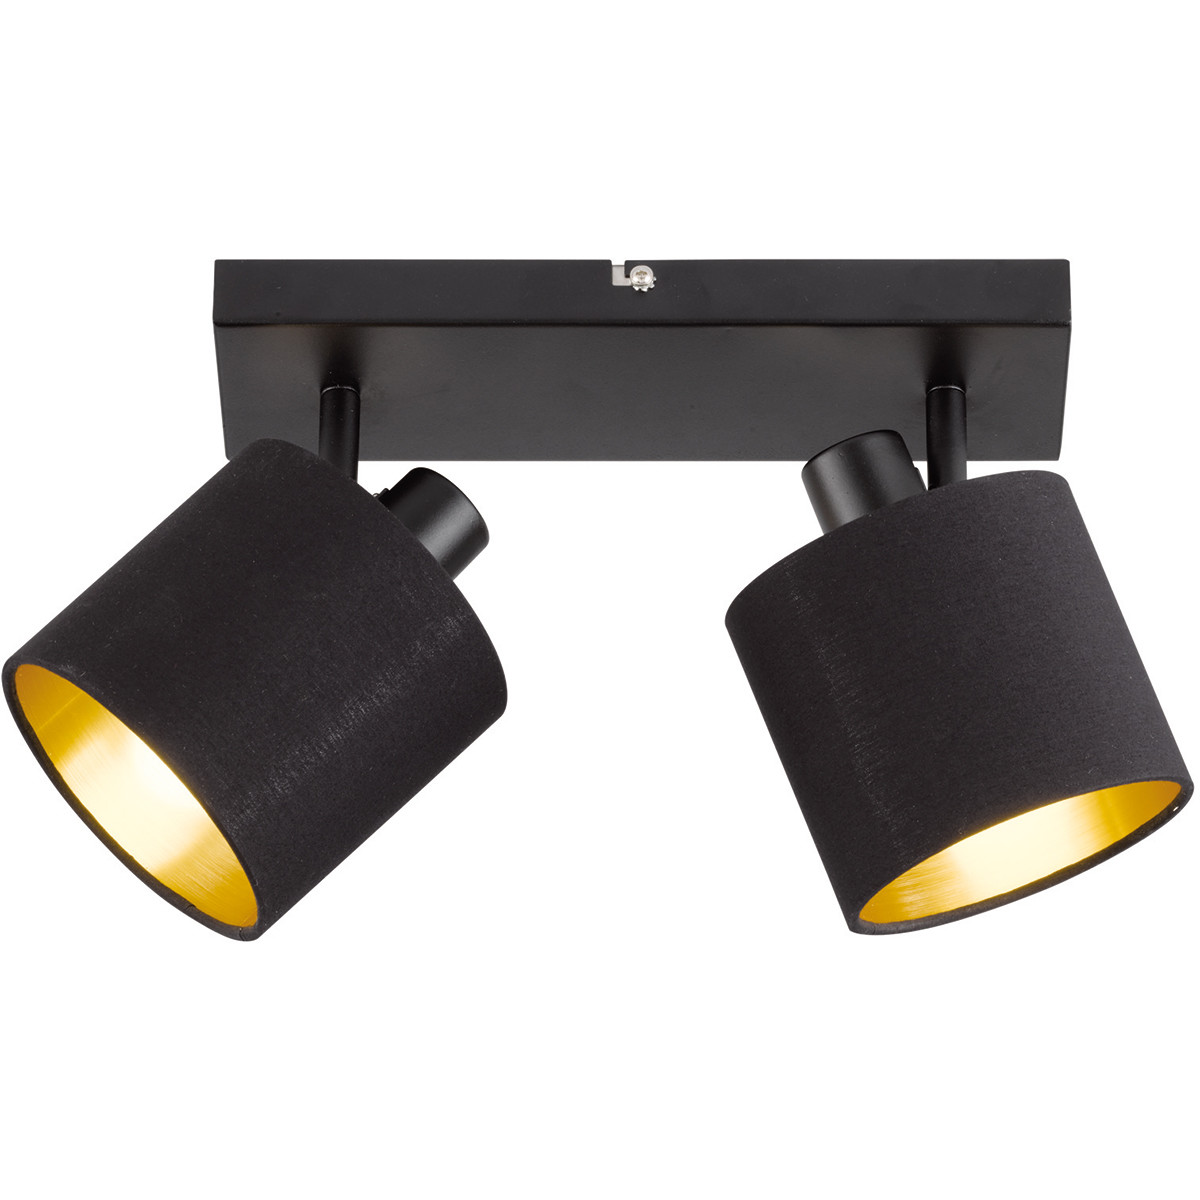 LED Plafondspot - Plafondverlichting - Trion Torry - E14 Fitting - 2-lichts - Rechthoek - Mat Zwart - Aluminium kopen?